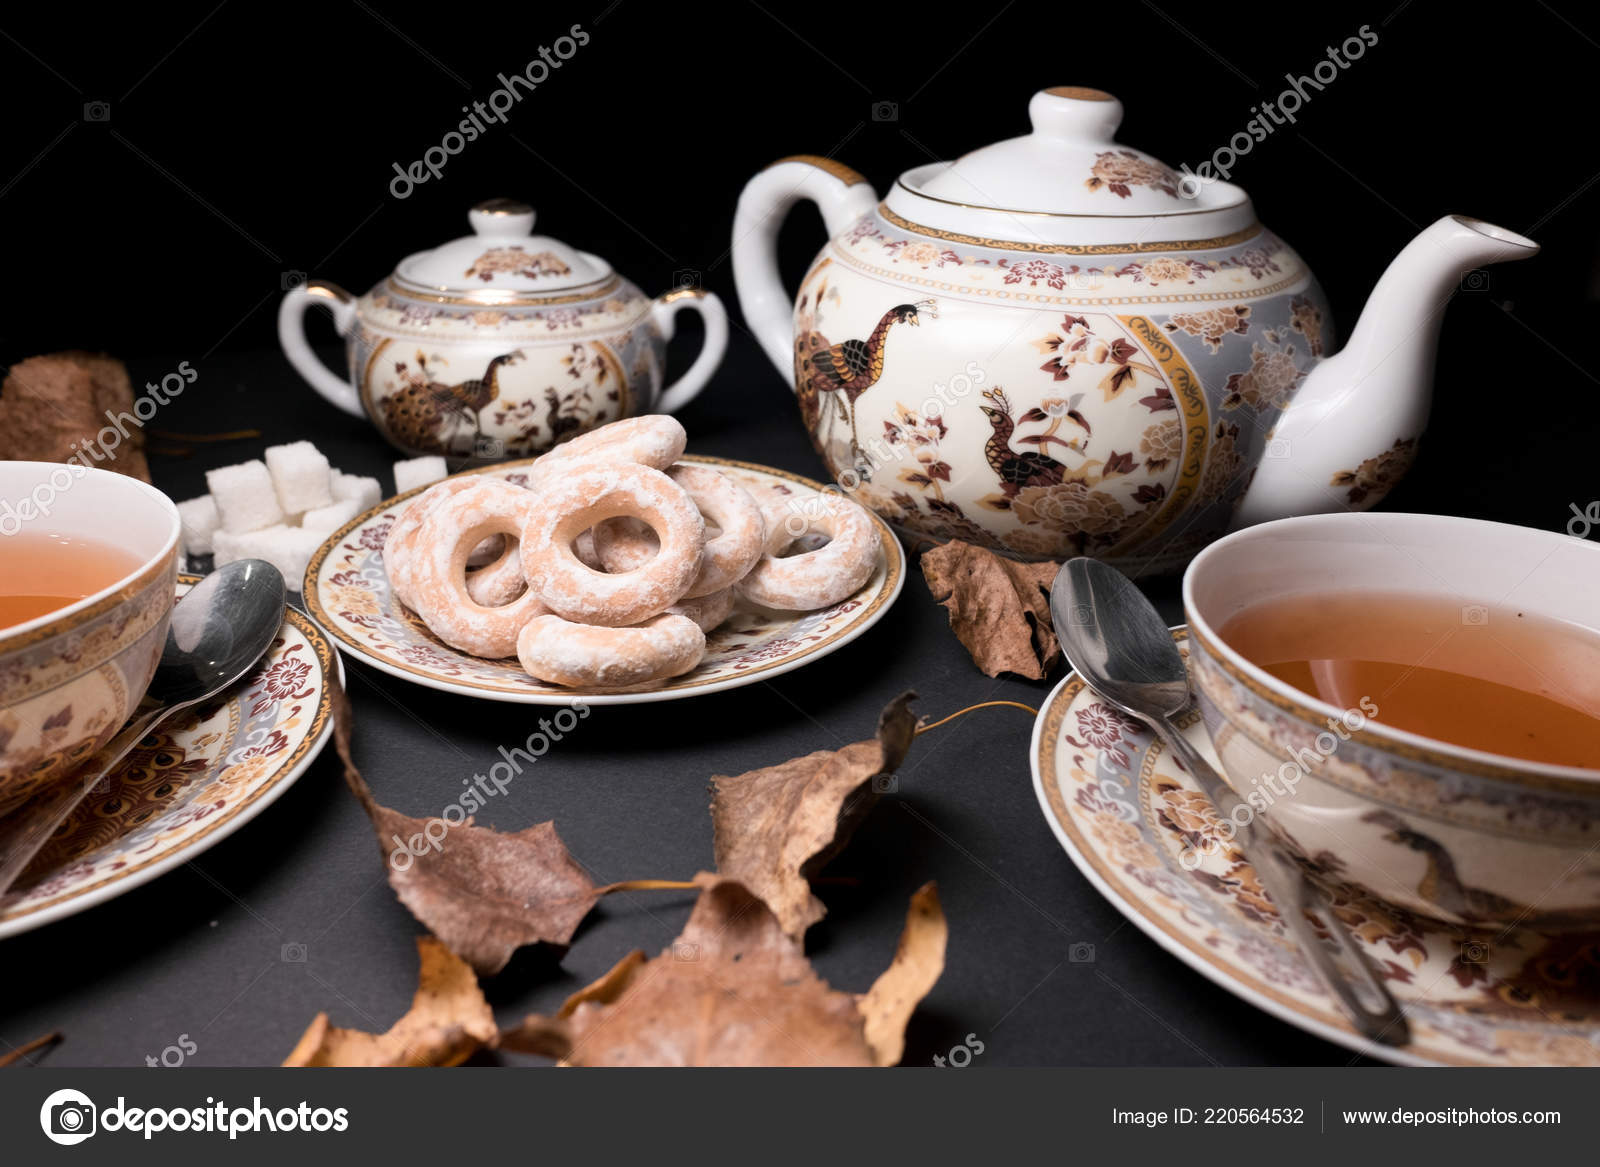 depositphotos_220564532-stock-photo-tea-party-tea-set-cup